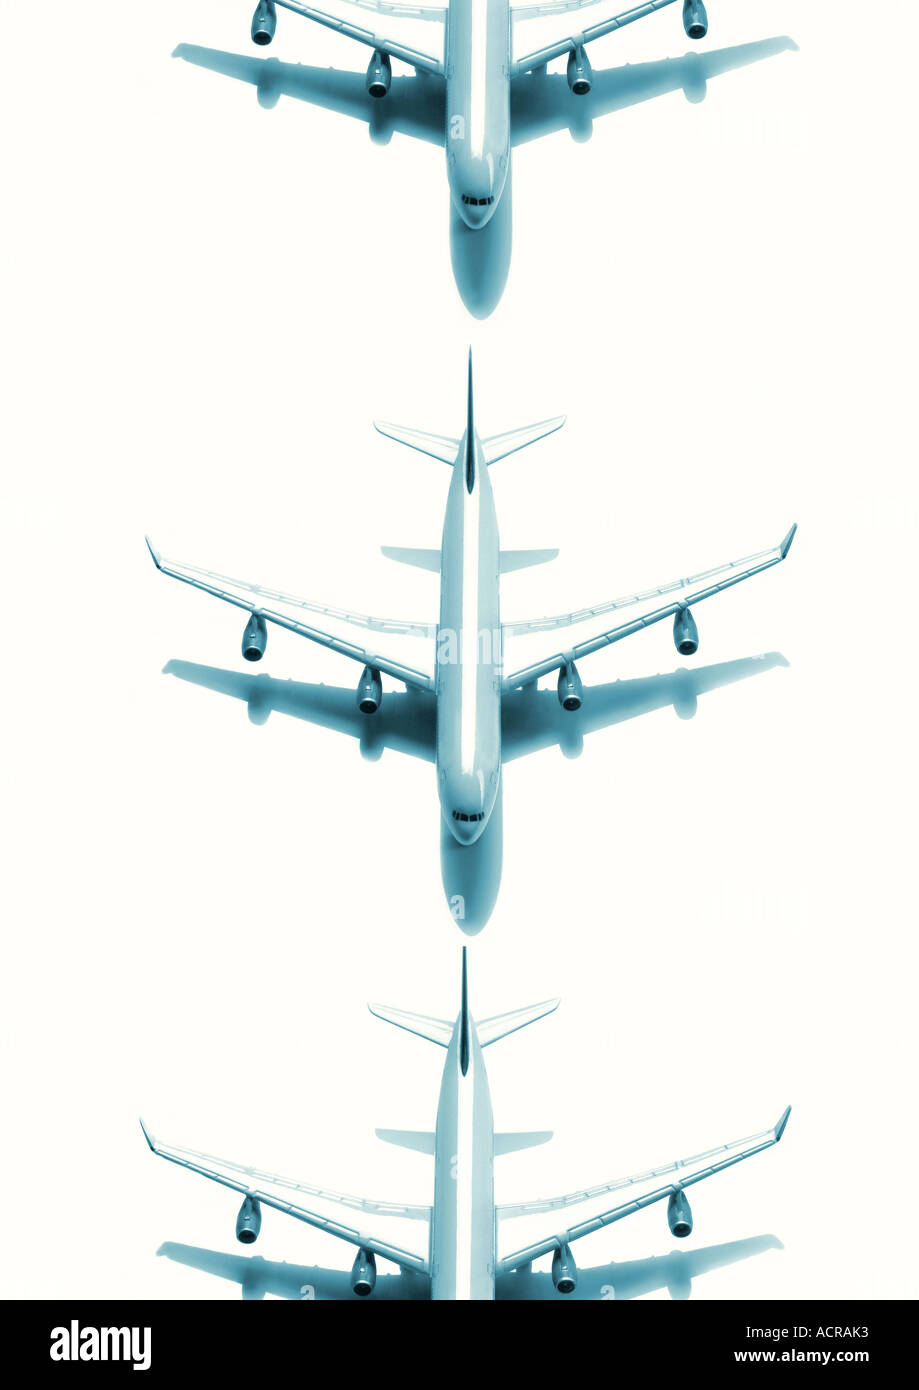 airplanes in a row Flugzeuge in einer Schlange Stock Photo